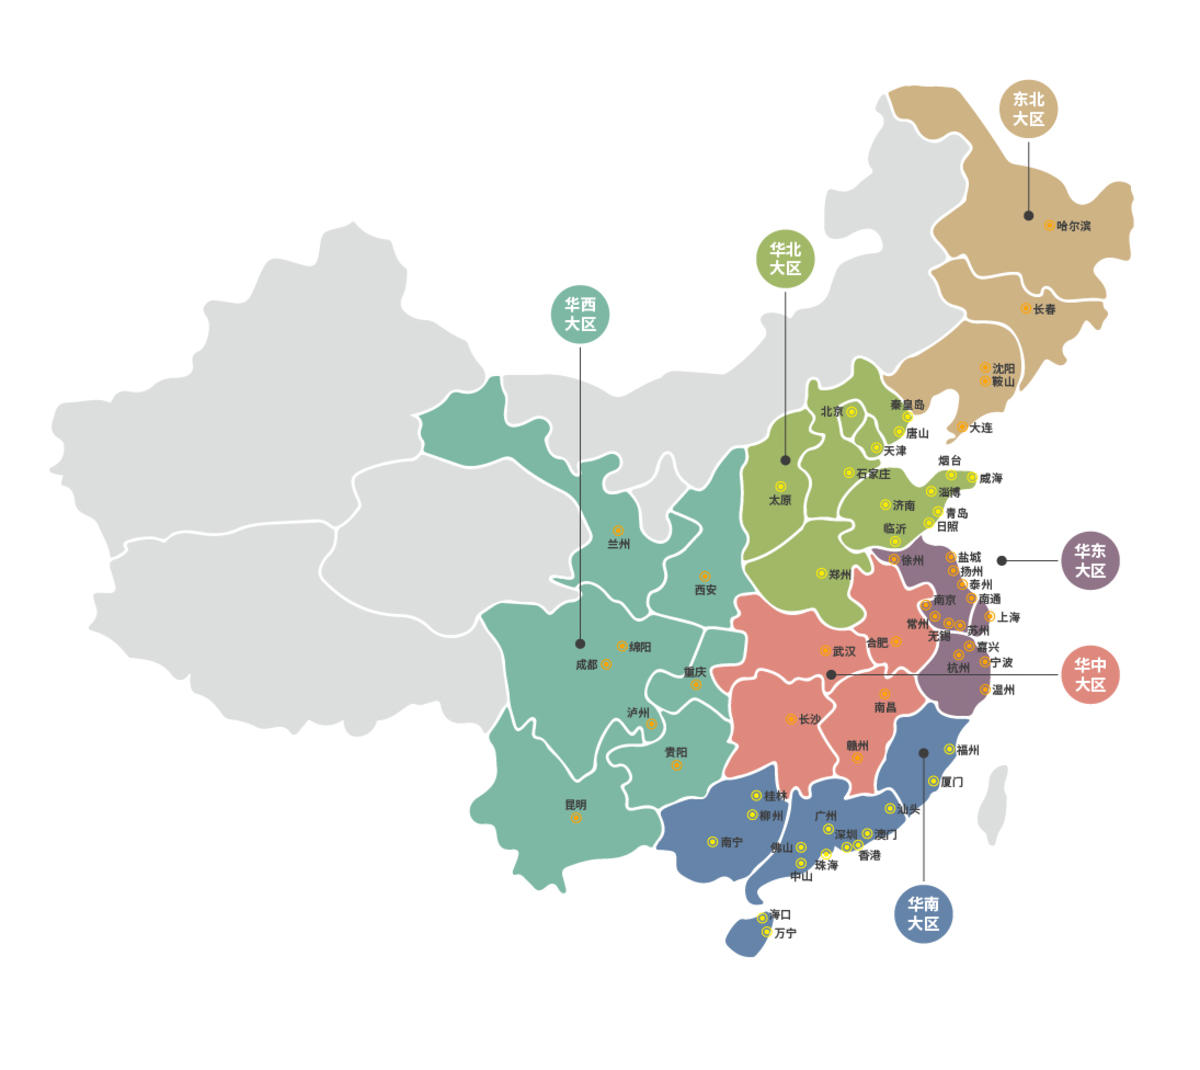 中国地图 城市地图